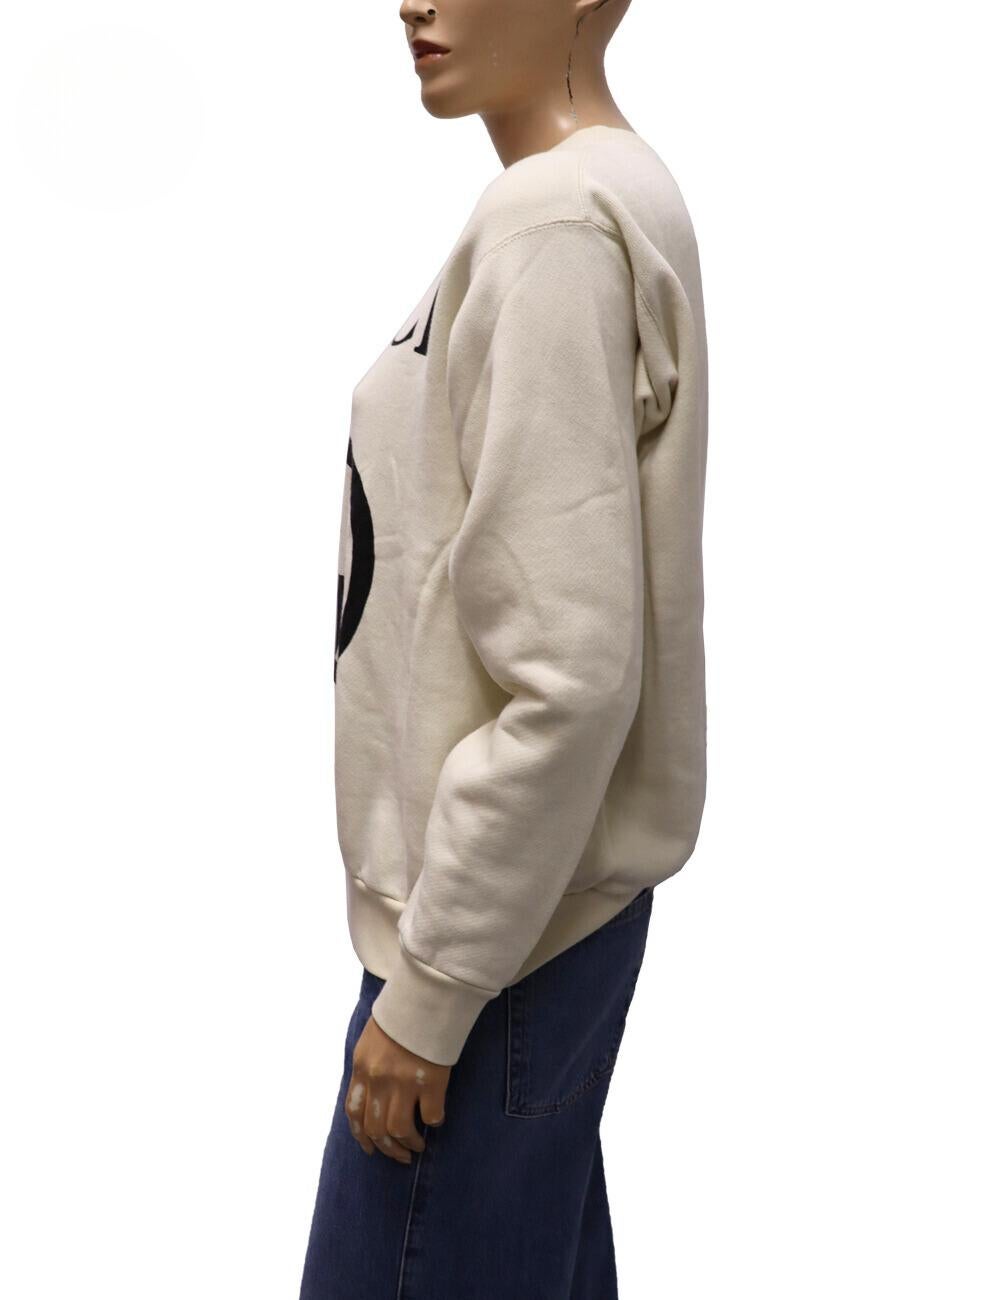 Gucci Off-White Interlocking G Sweatshirt, mit Rundhalsausschnitt, langen Ärmeln, Interlocking-G auf der Vorderseite und Logo-Print.

MATERIAL: 100% Baumwolle
Größe: XS
Oberweite: 118cm
Taille: 110cm
Hüfte: 100cm
Allgemeiner Zustand: Gut